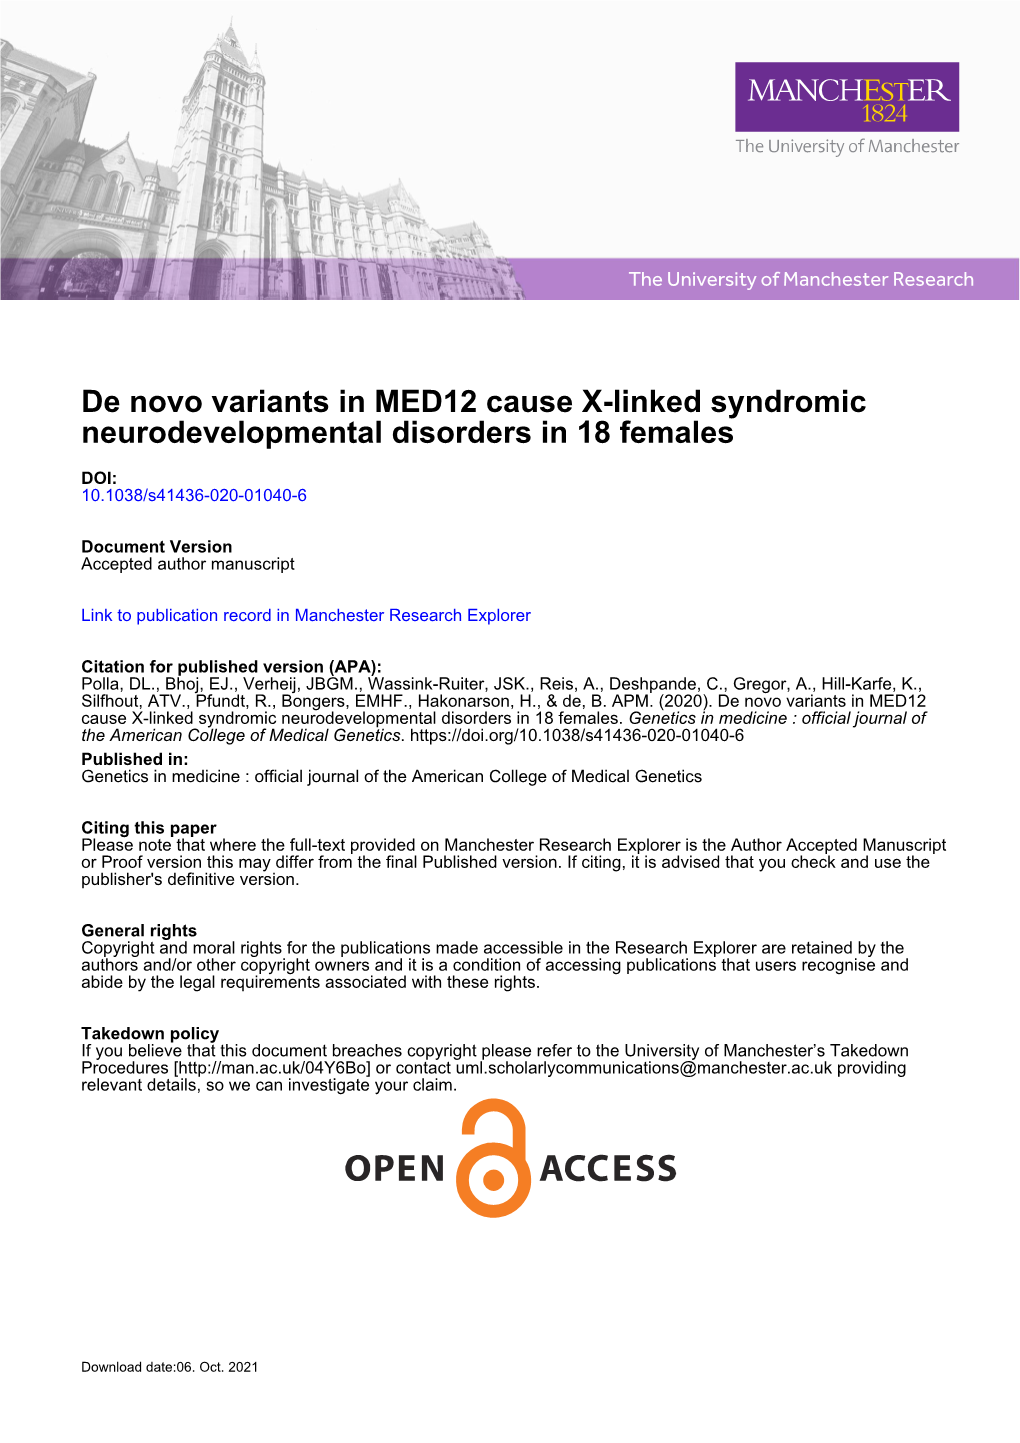 De Novo Variants in MED12 Cause X-Linked Syndromic Neurodevelopmental Disorders in 18 Females